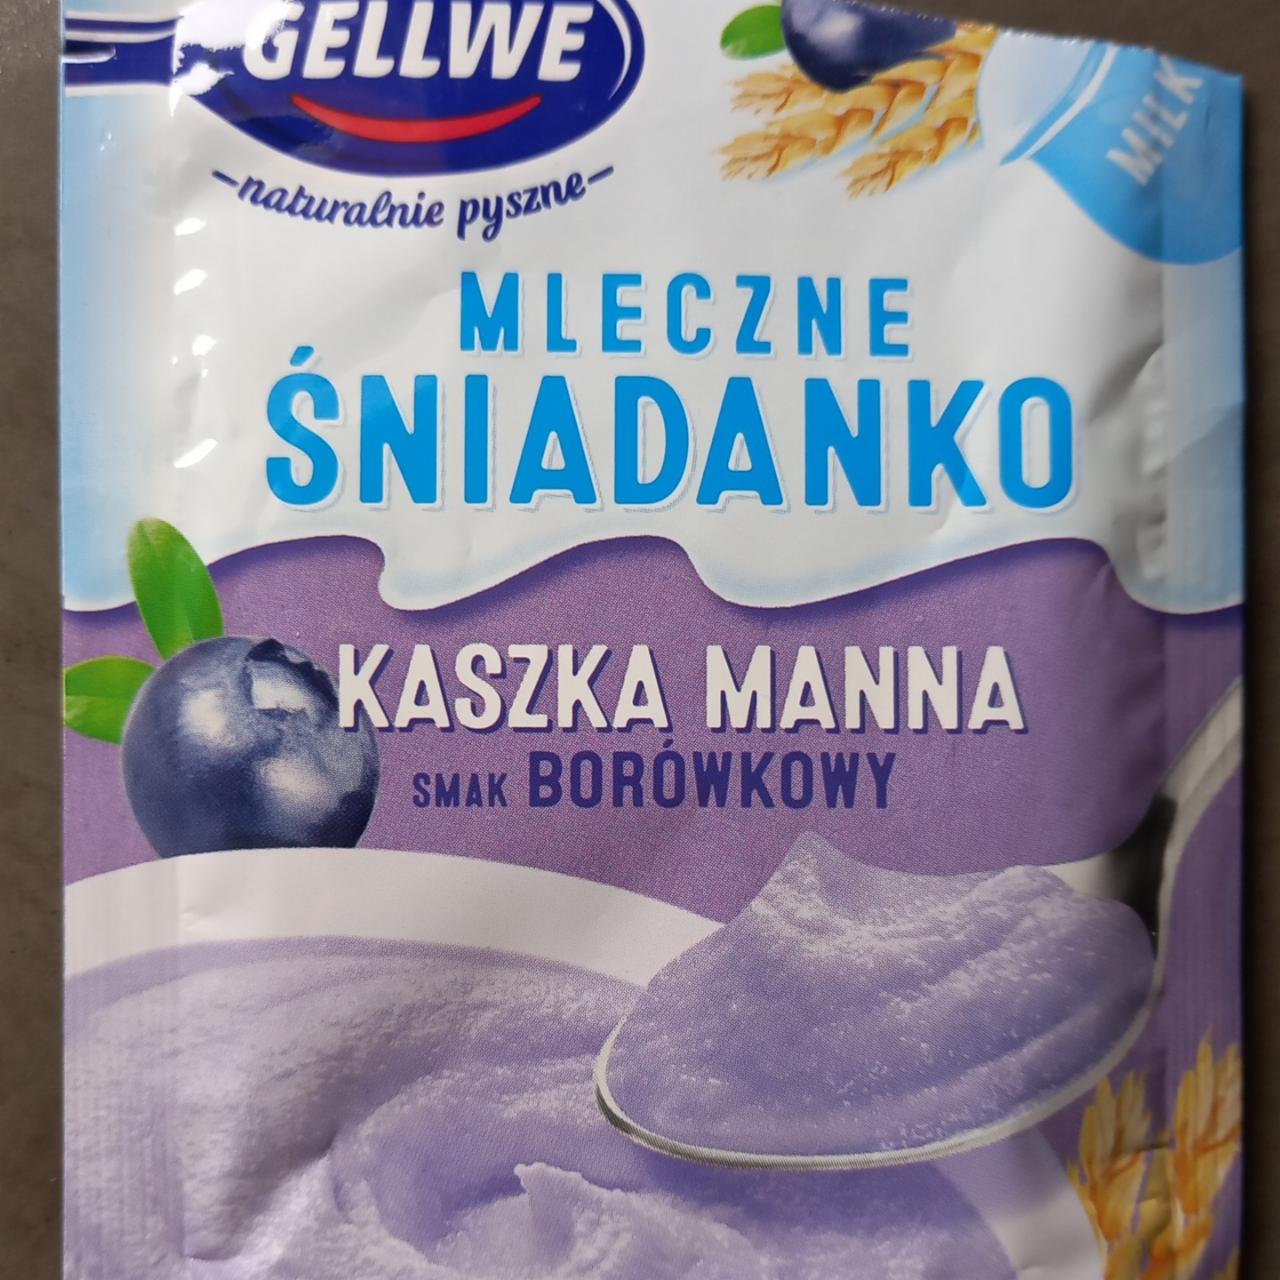 Zdjęcia - kaszka manna smak borówkowy mleczne śniadanko Gellwe